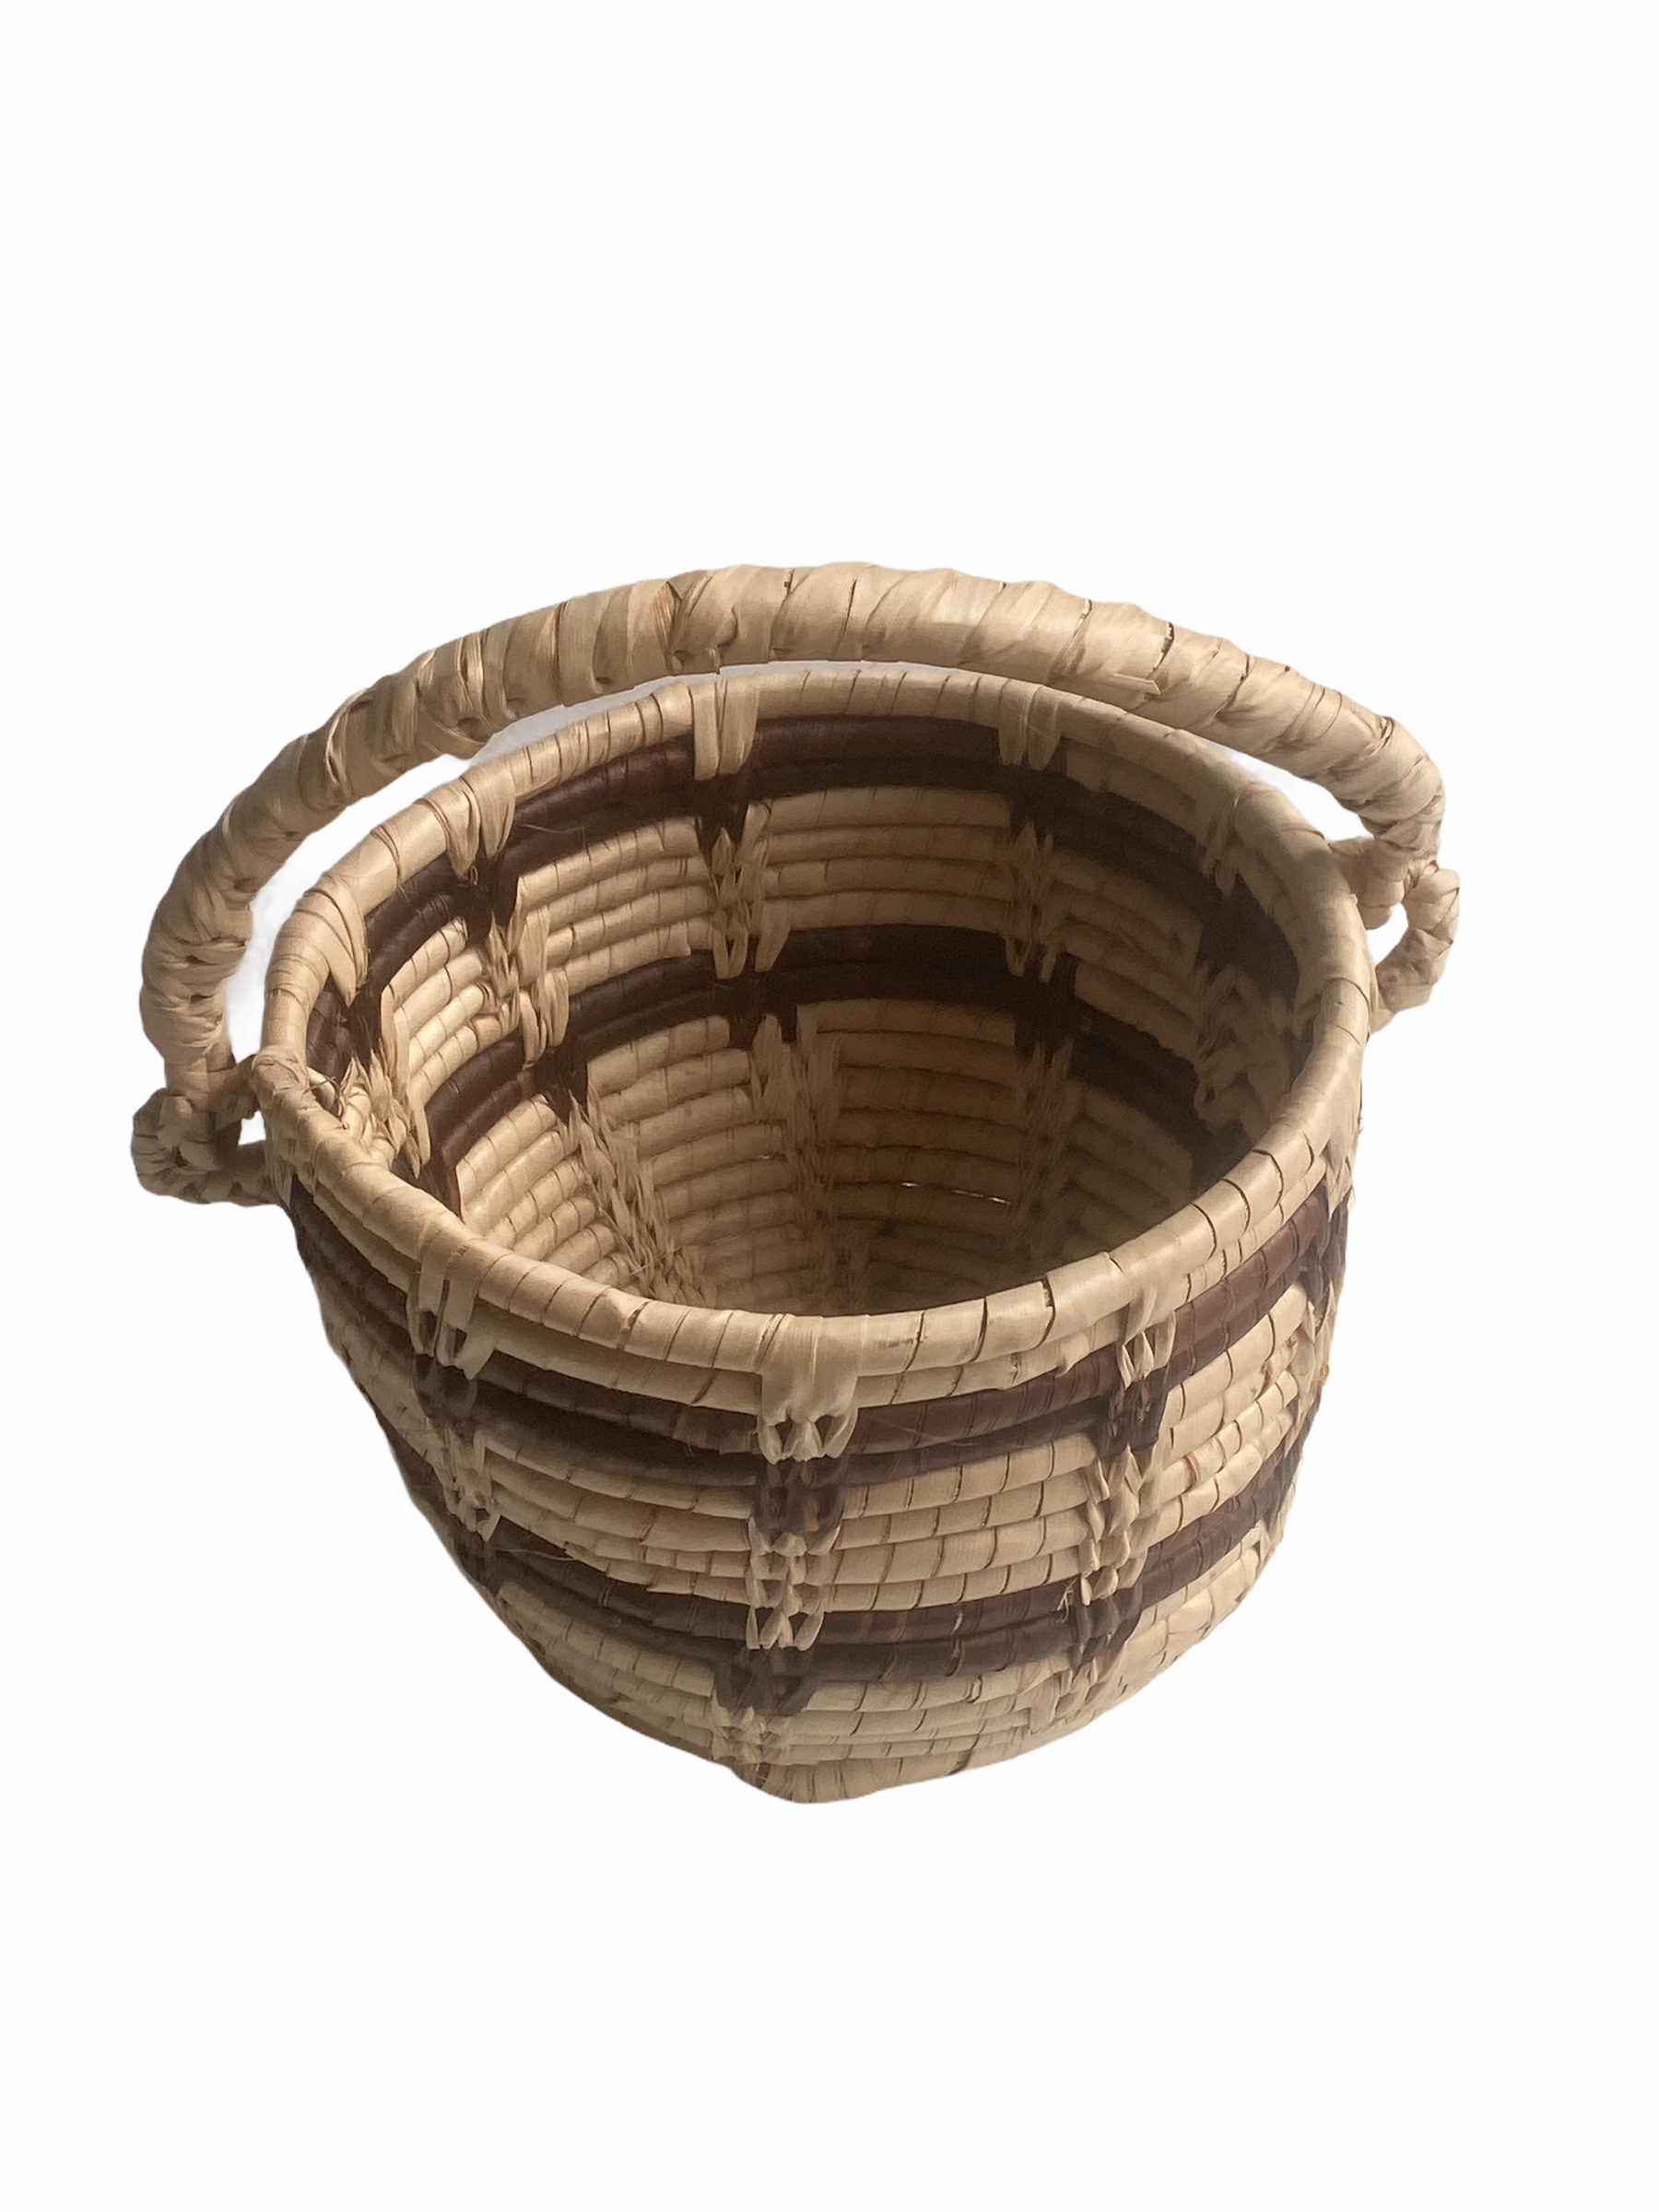 Banana Skin Handwoven Basket